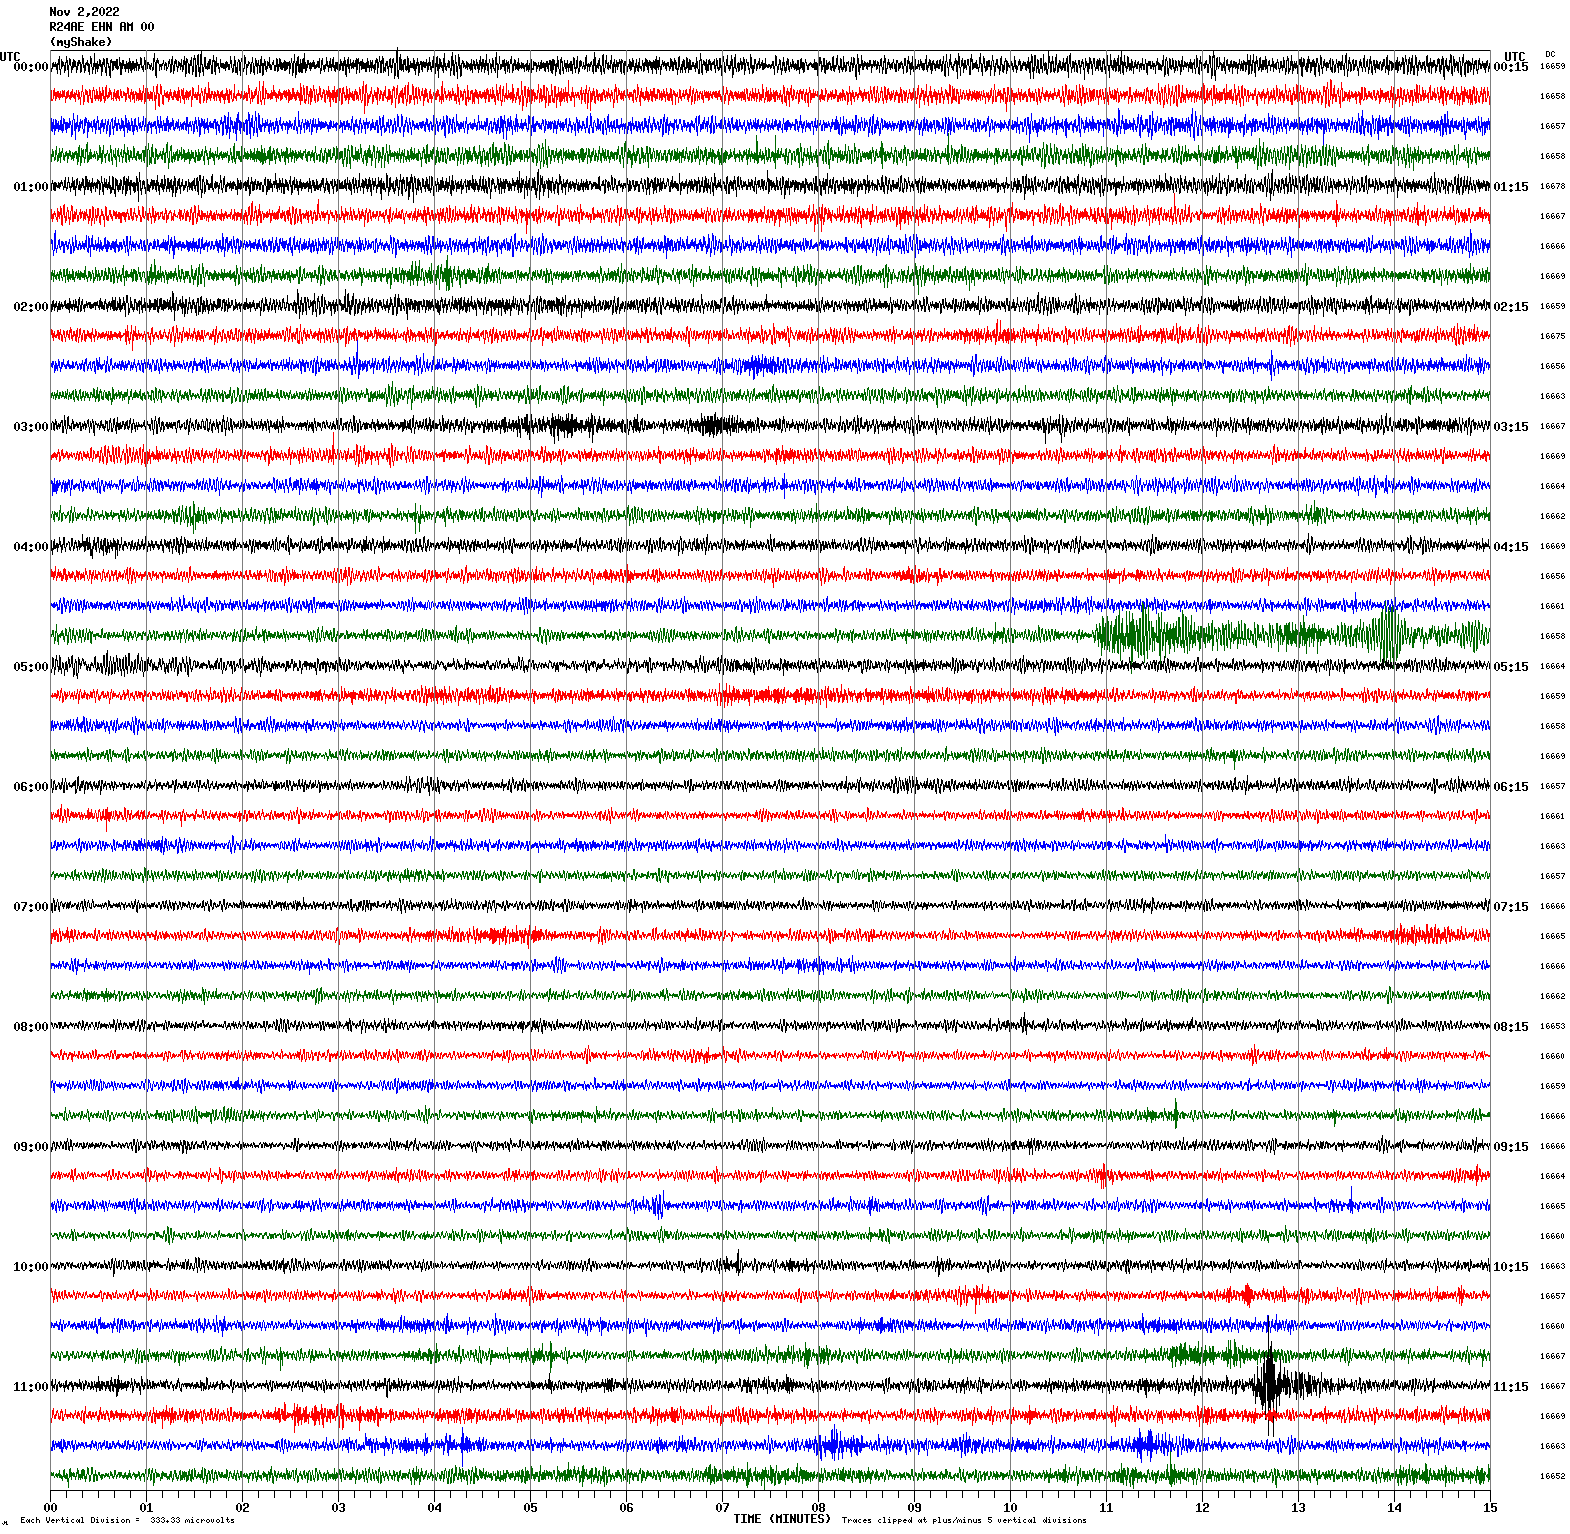 /seismic-data/R24AN/R24AE_EHN_AM_00.2022110200.gif